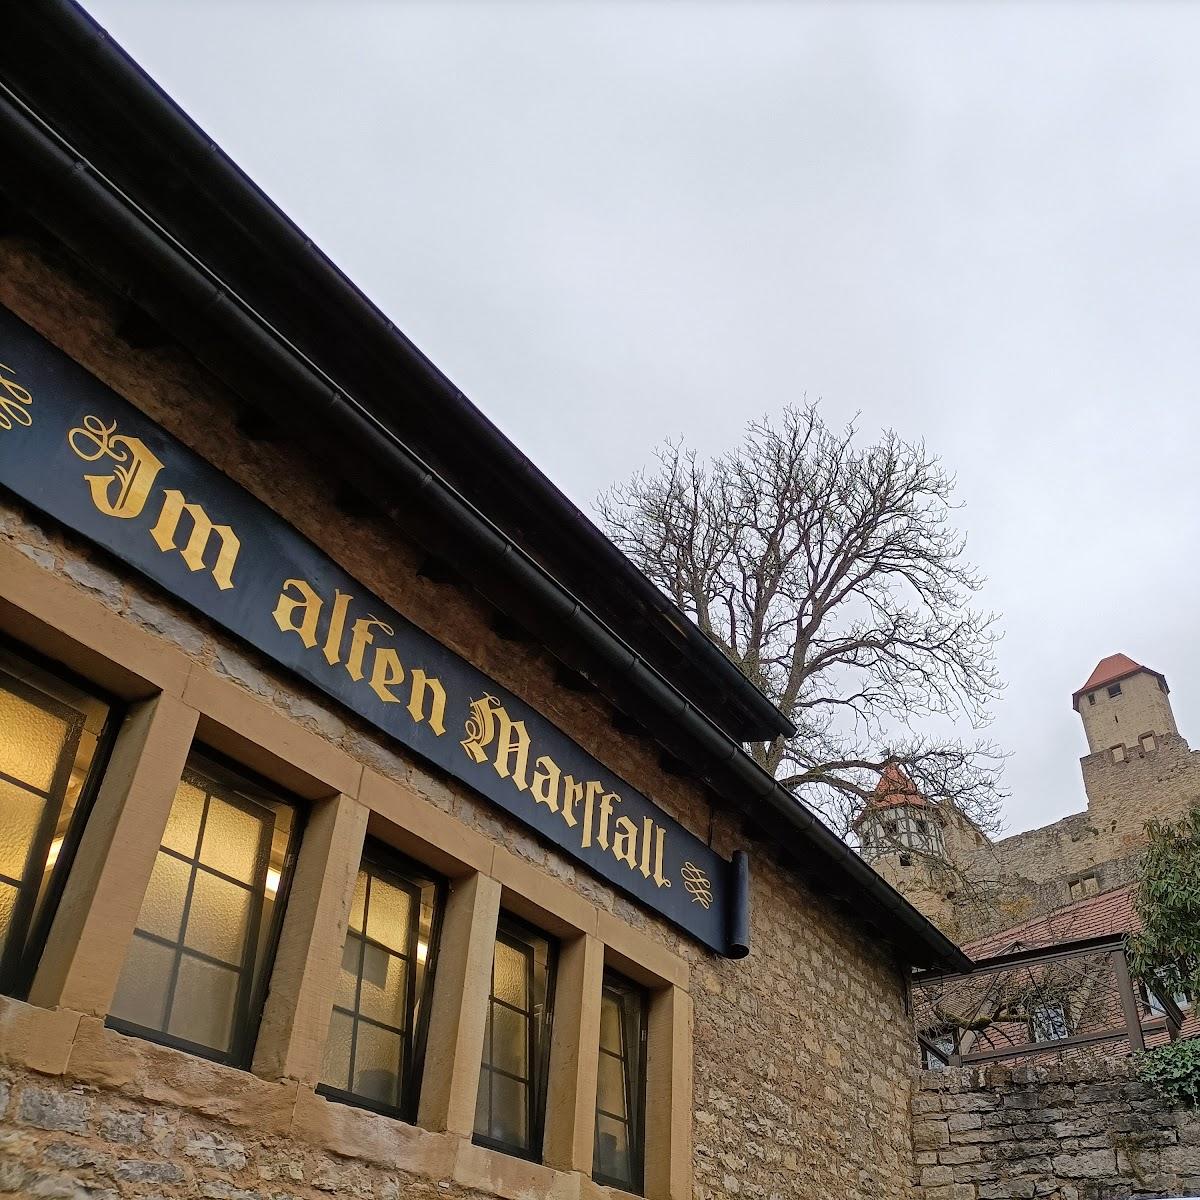 Restaurant "Im Alten Marsfall Burgrestaurant" in Neckarzimmern